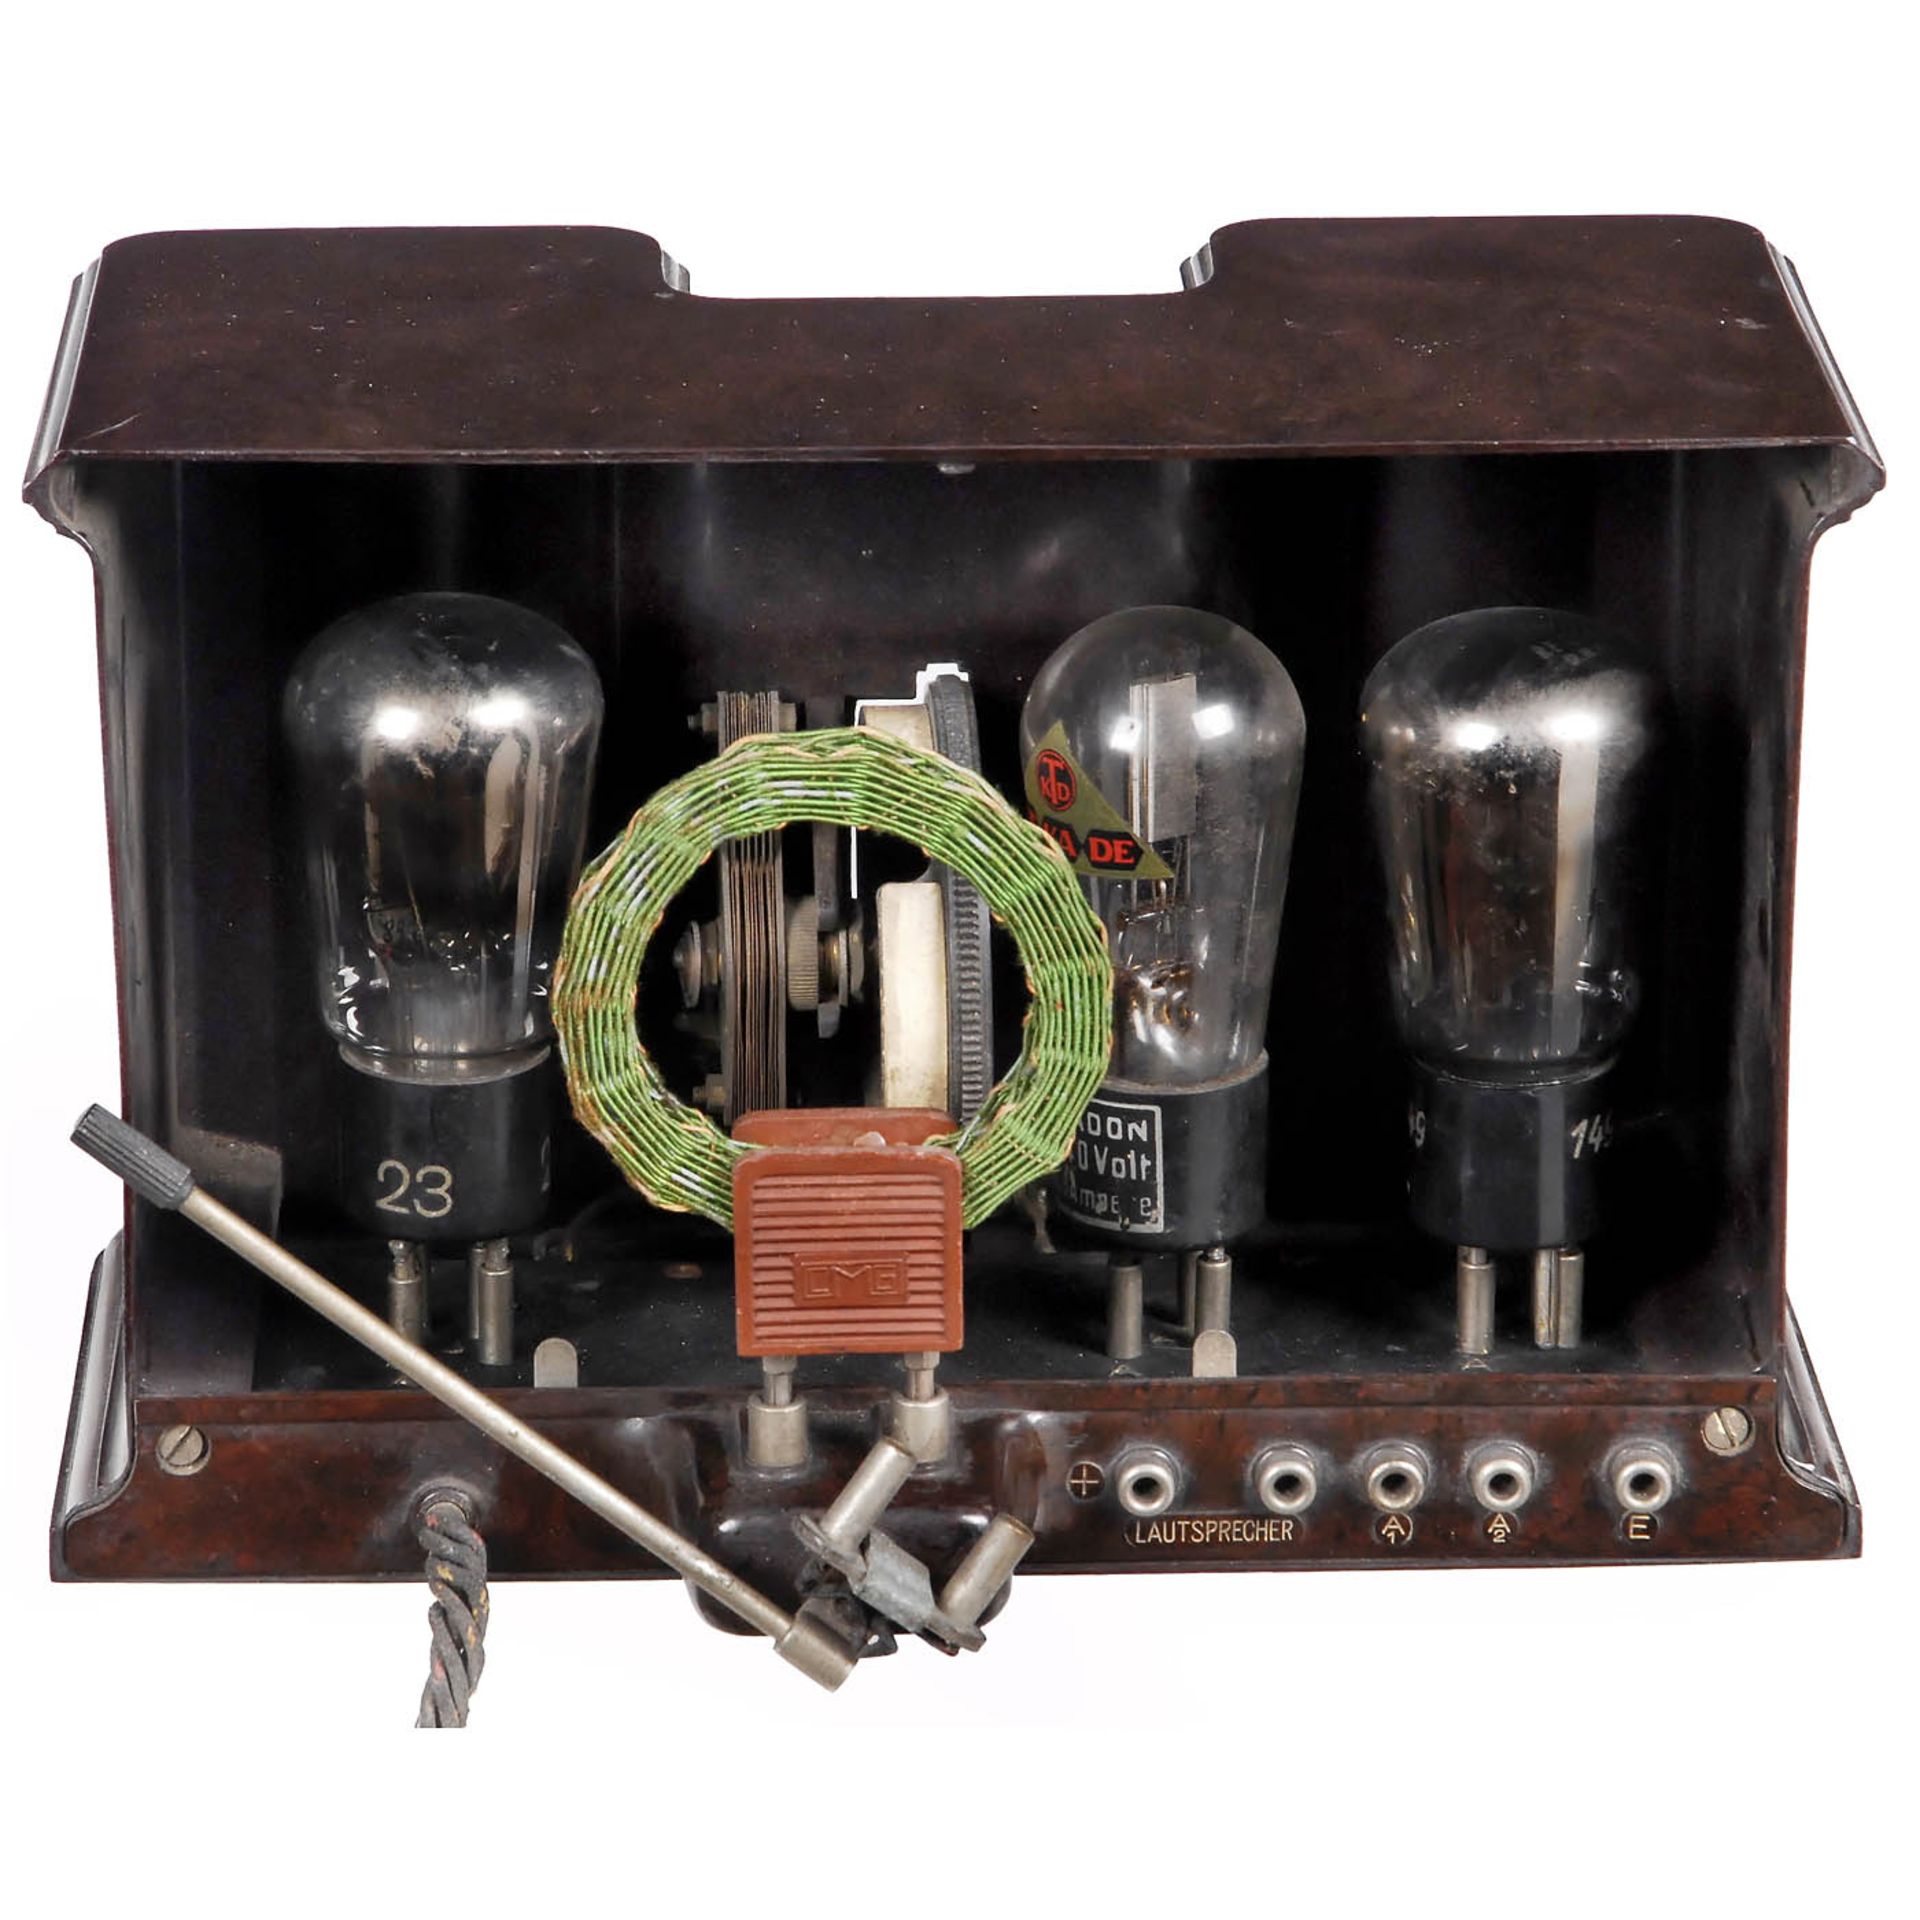 Blaupunkt Ideal VIII Radio Receiver, c. 1930 - Bild 2 aus 2